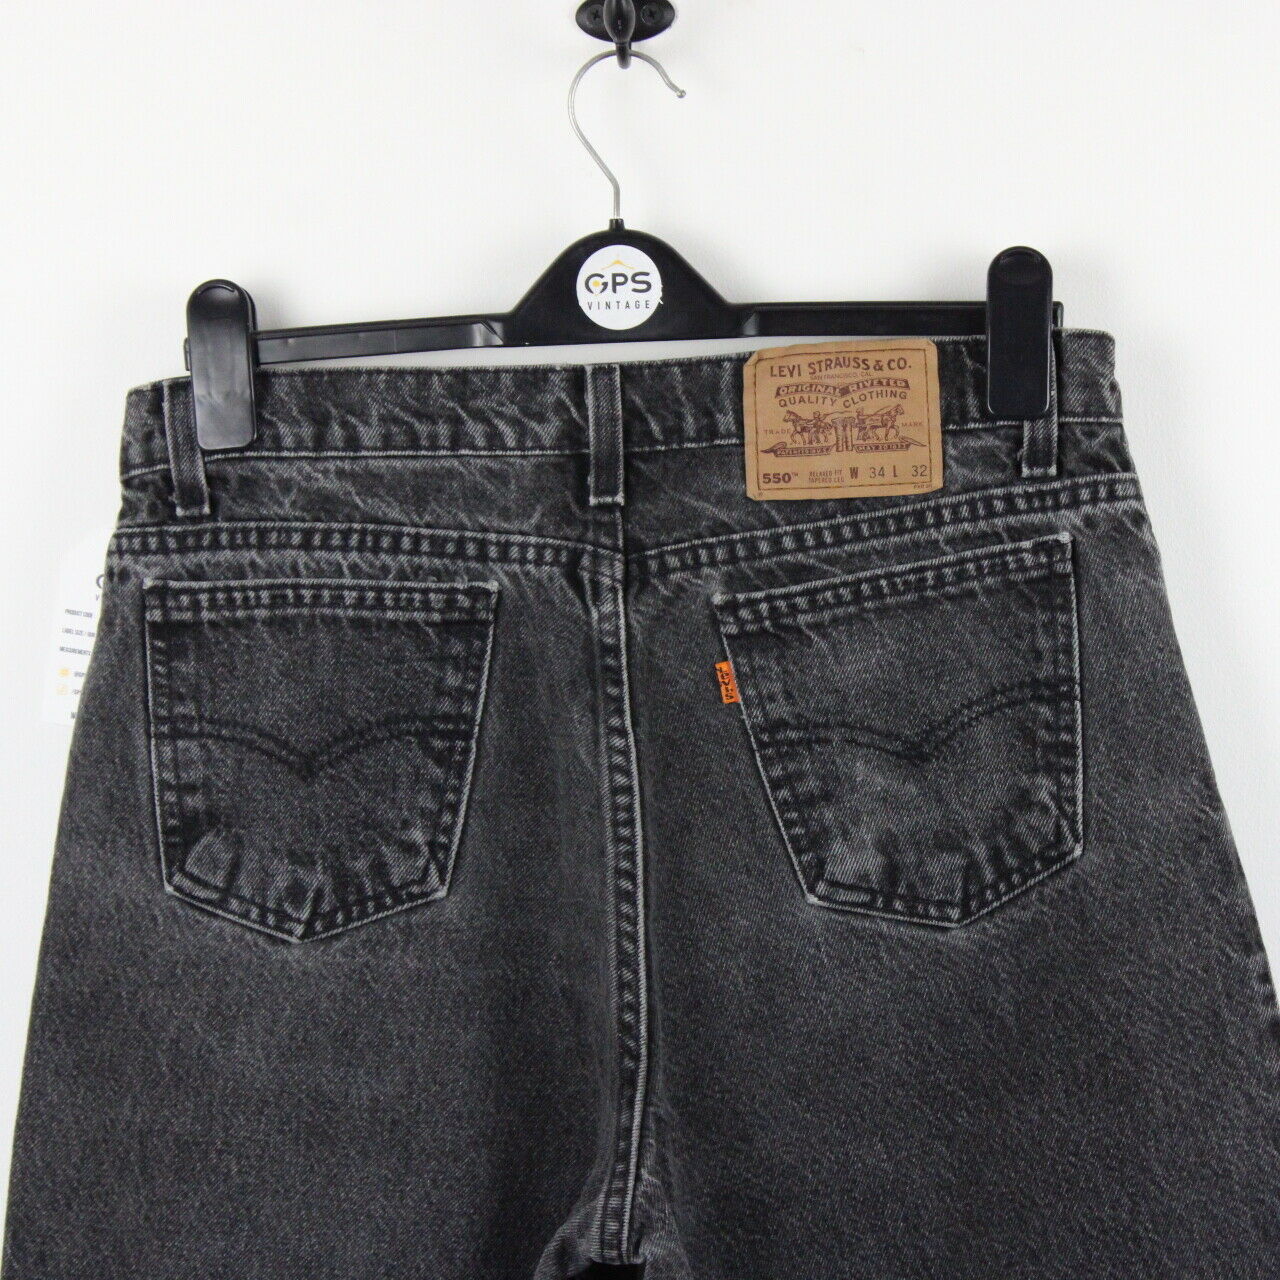 LEVIS 550 Jeans Black Charcoal | W34 L32 – GPS Vintage